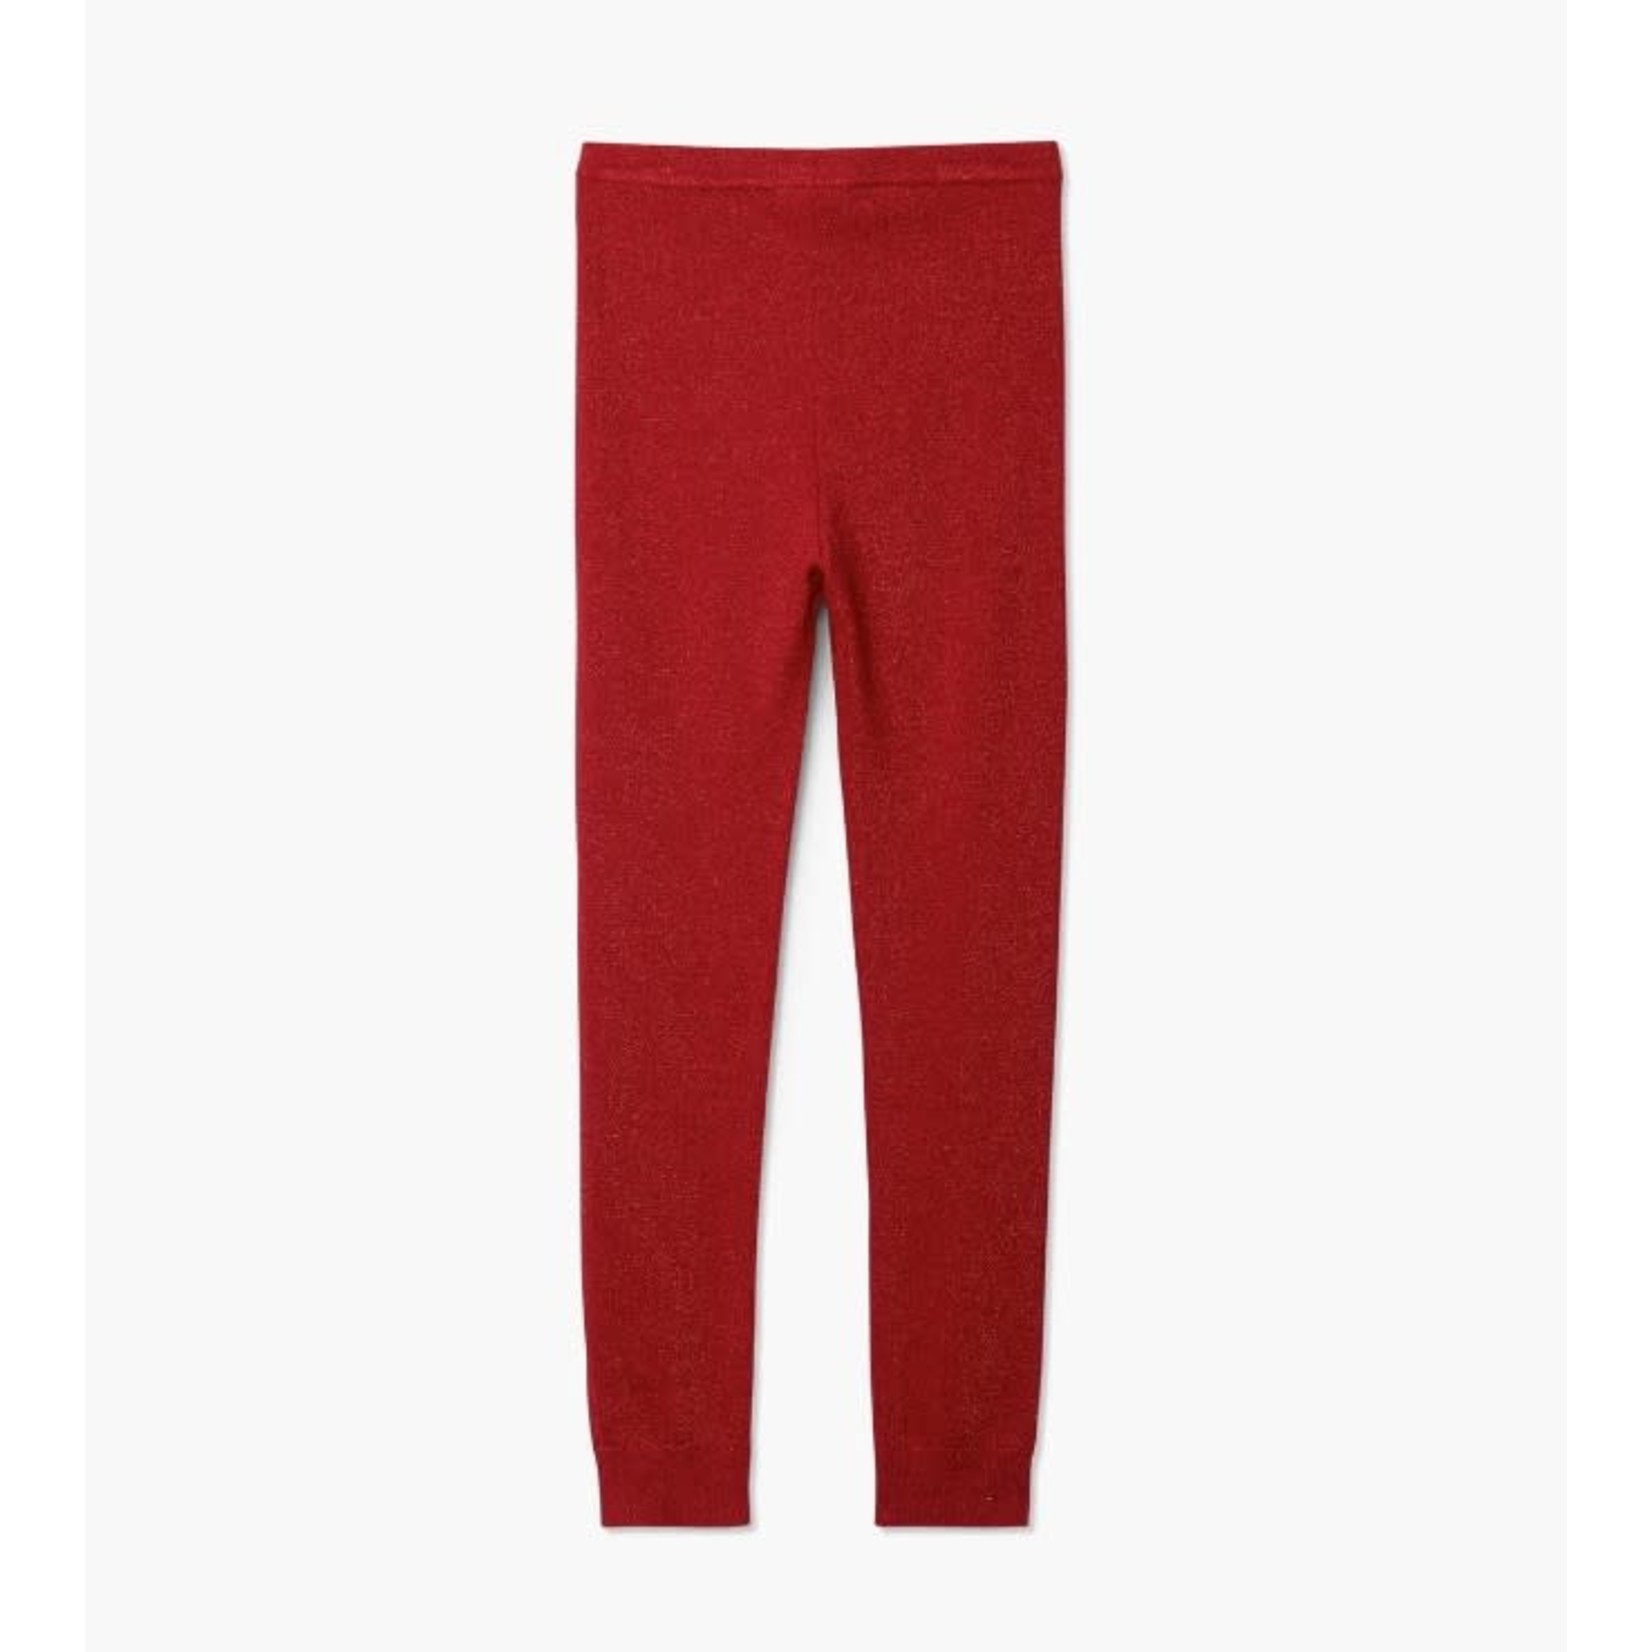 HATLEY - Red shimmer cable knit leggings - La Culotte à l'Envers